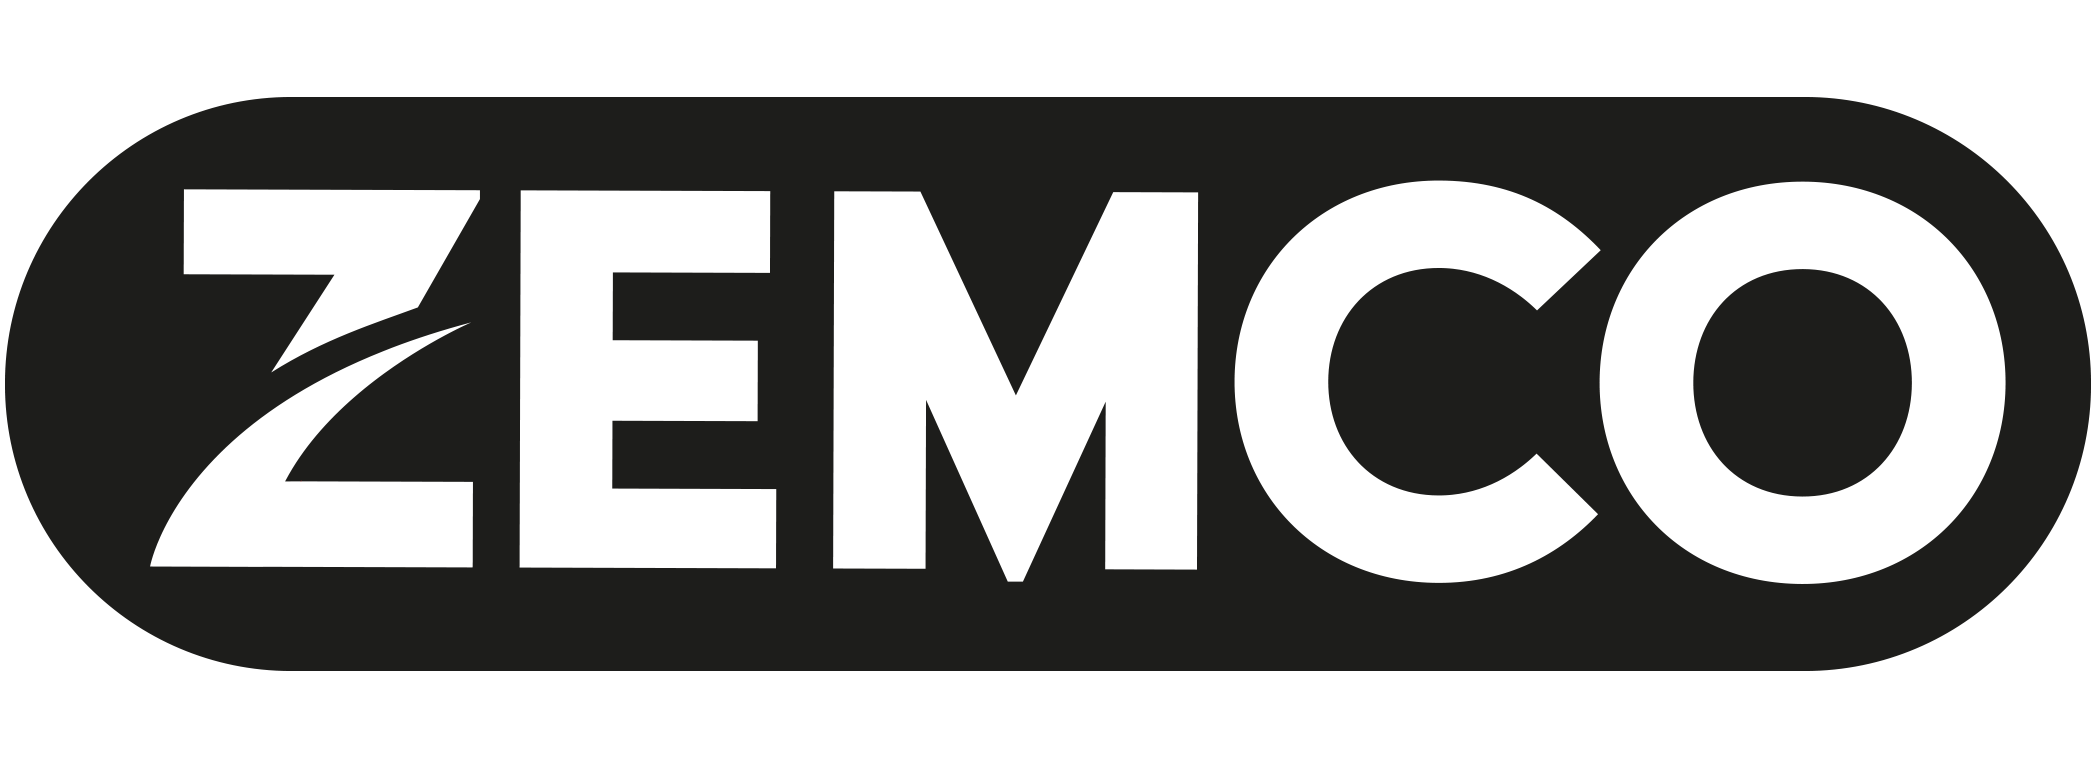 ZEMCO-logo-zwart-wit-rgb.png (67 KB)